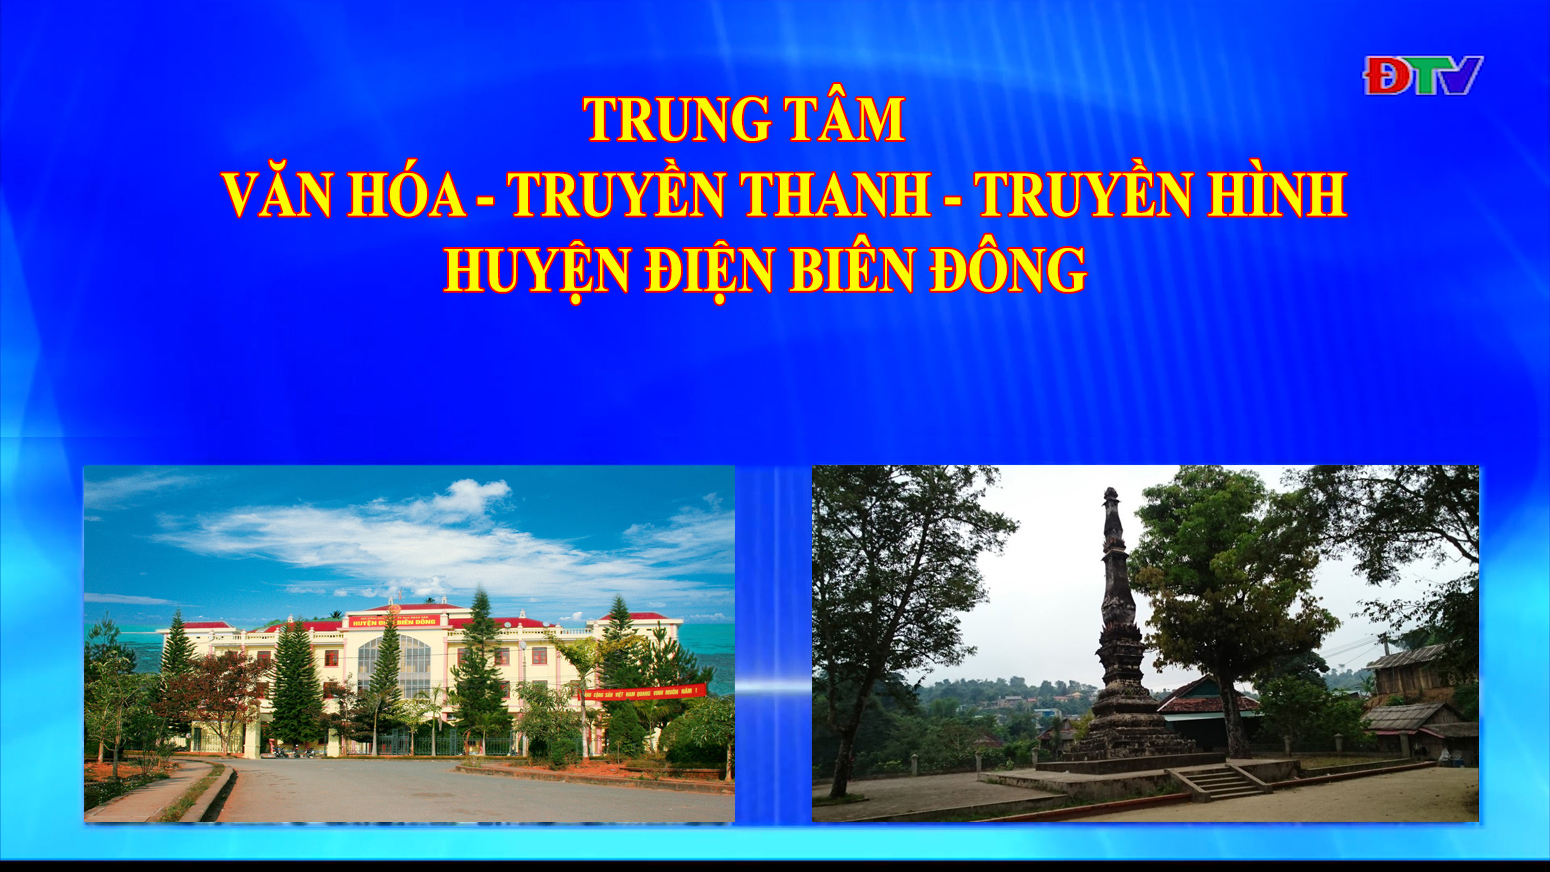 Trung tâm VH-TTTH huyện Điện Biên Đông (Ngày 14-8-2021)